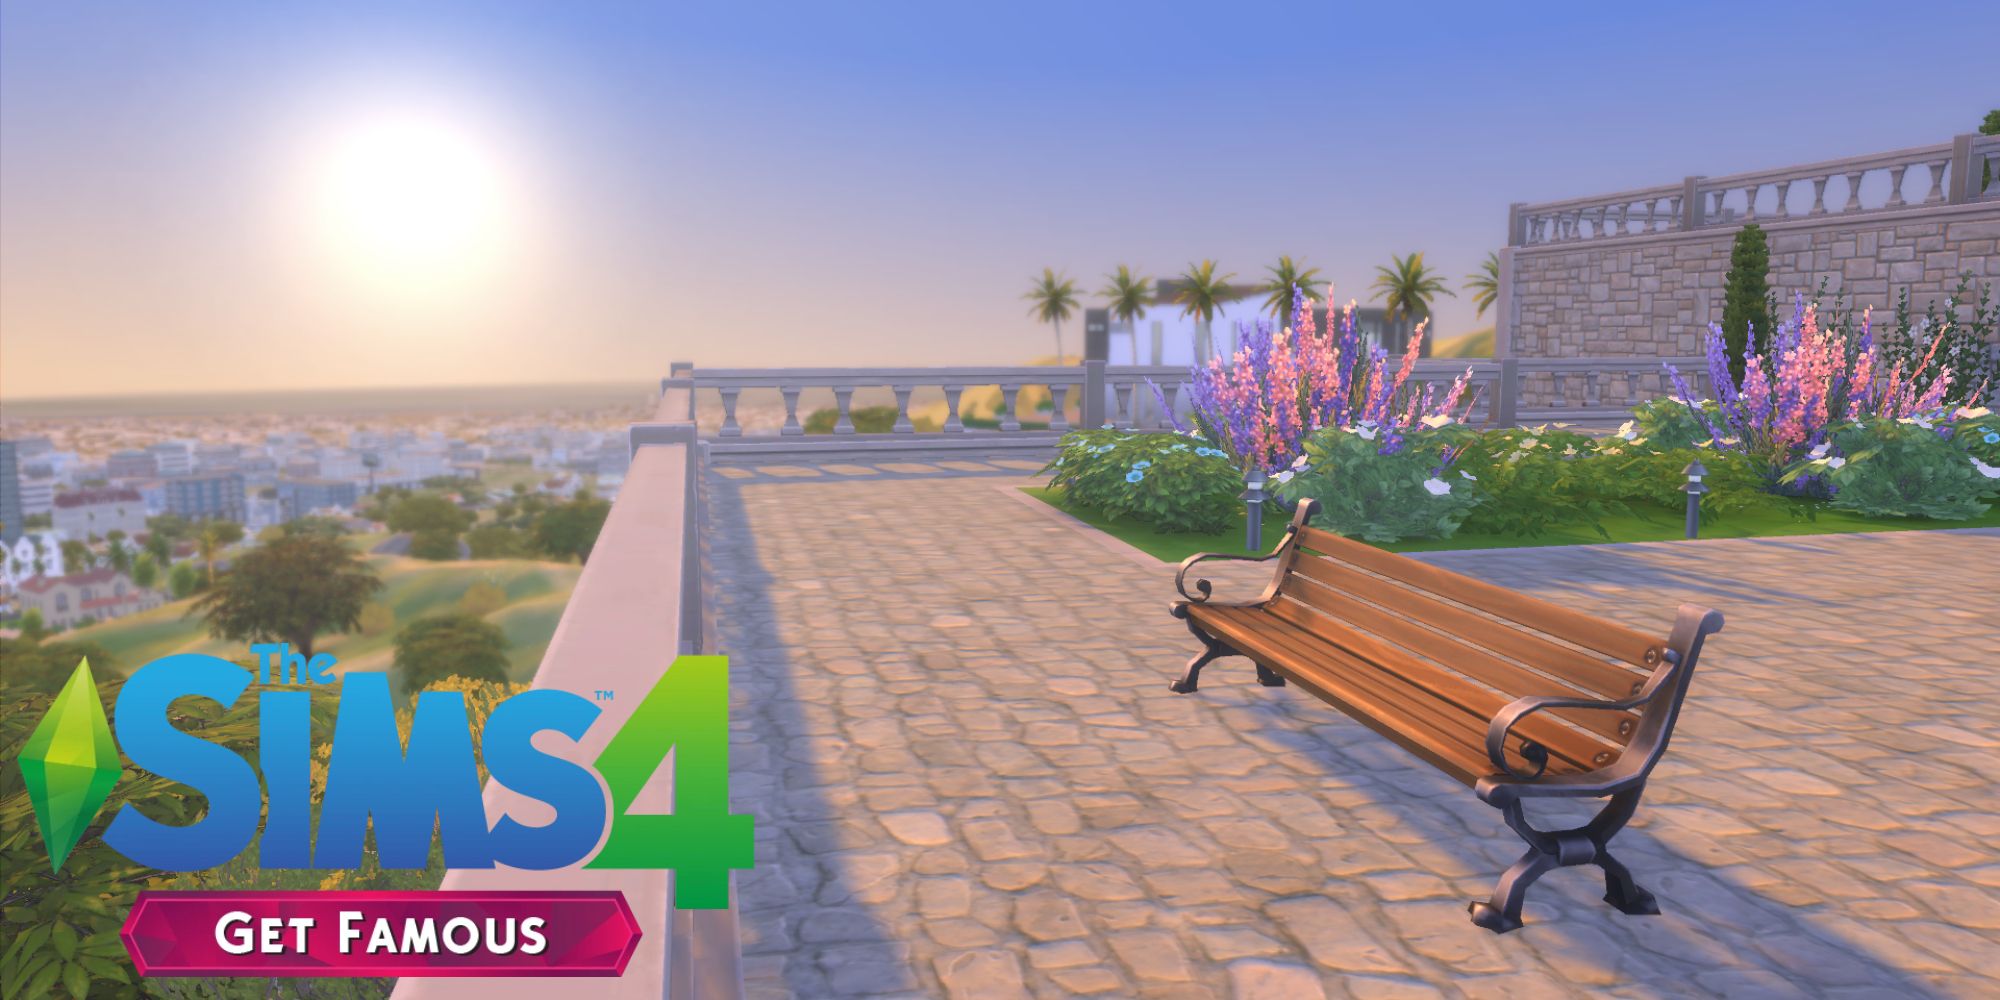 Del Sol Valley, le monde de l'extension Get Famous, est l'un des mondes les plus chauds des Sims 4